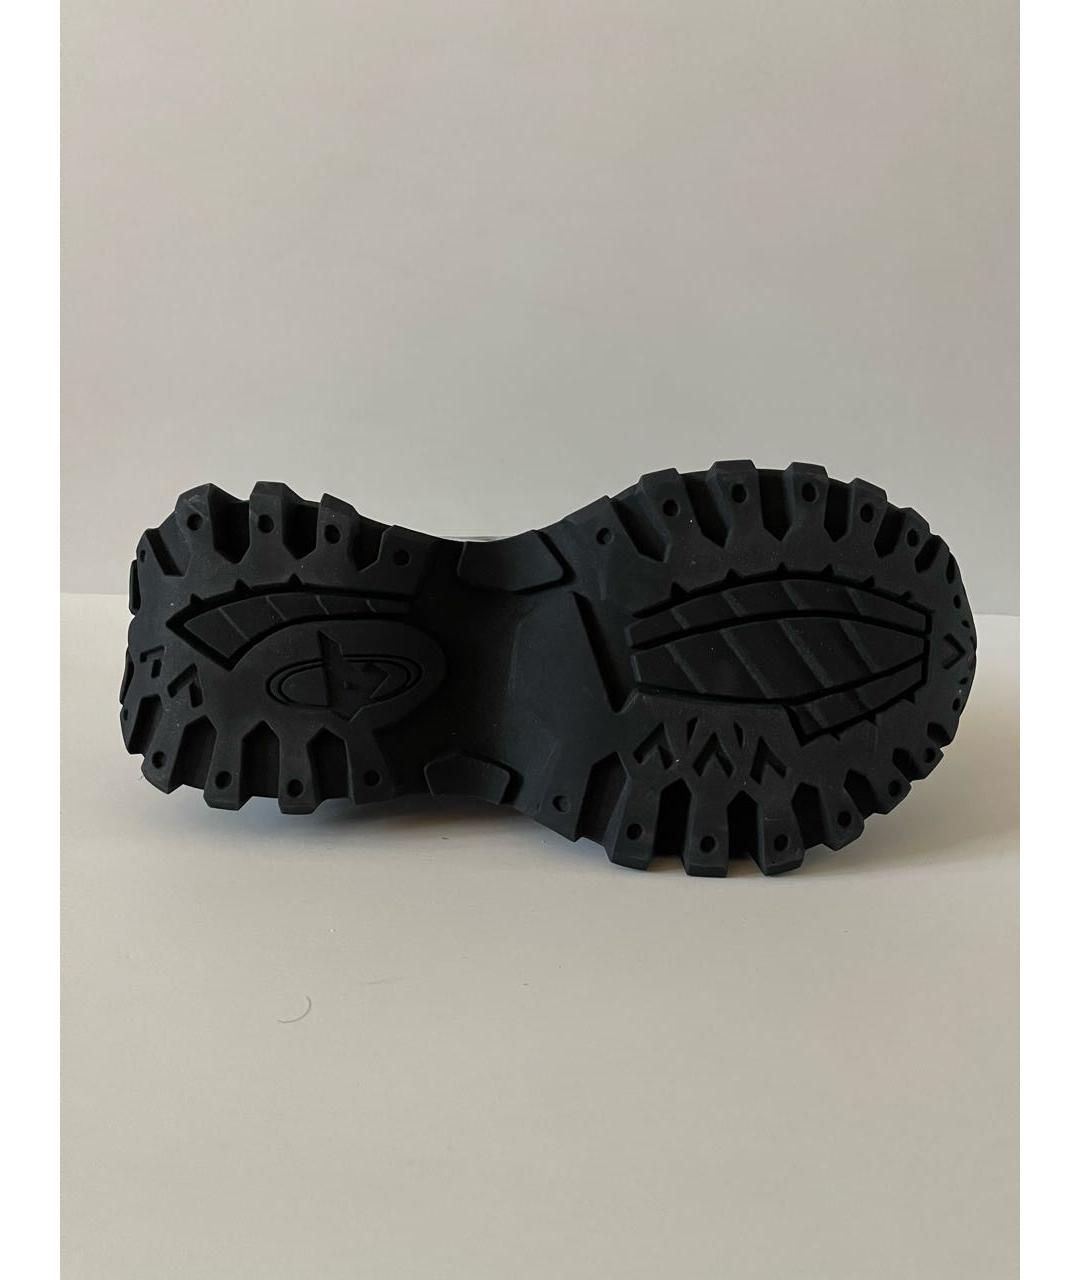 AXEL ARIGATO Серые кожаные низкие кроссовки / кеды, фото 6